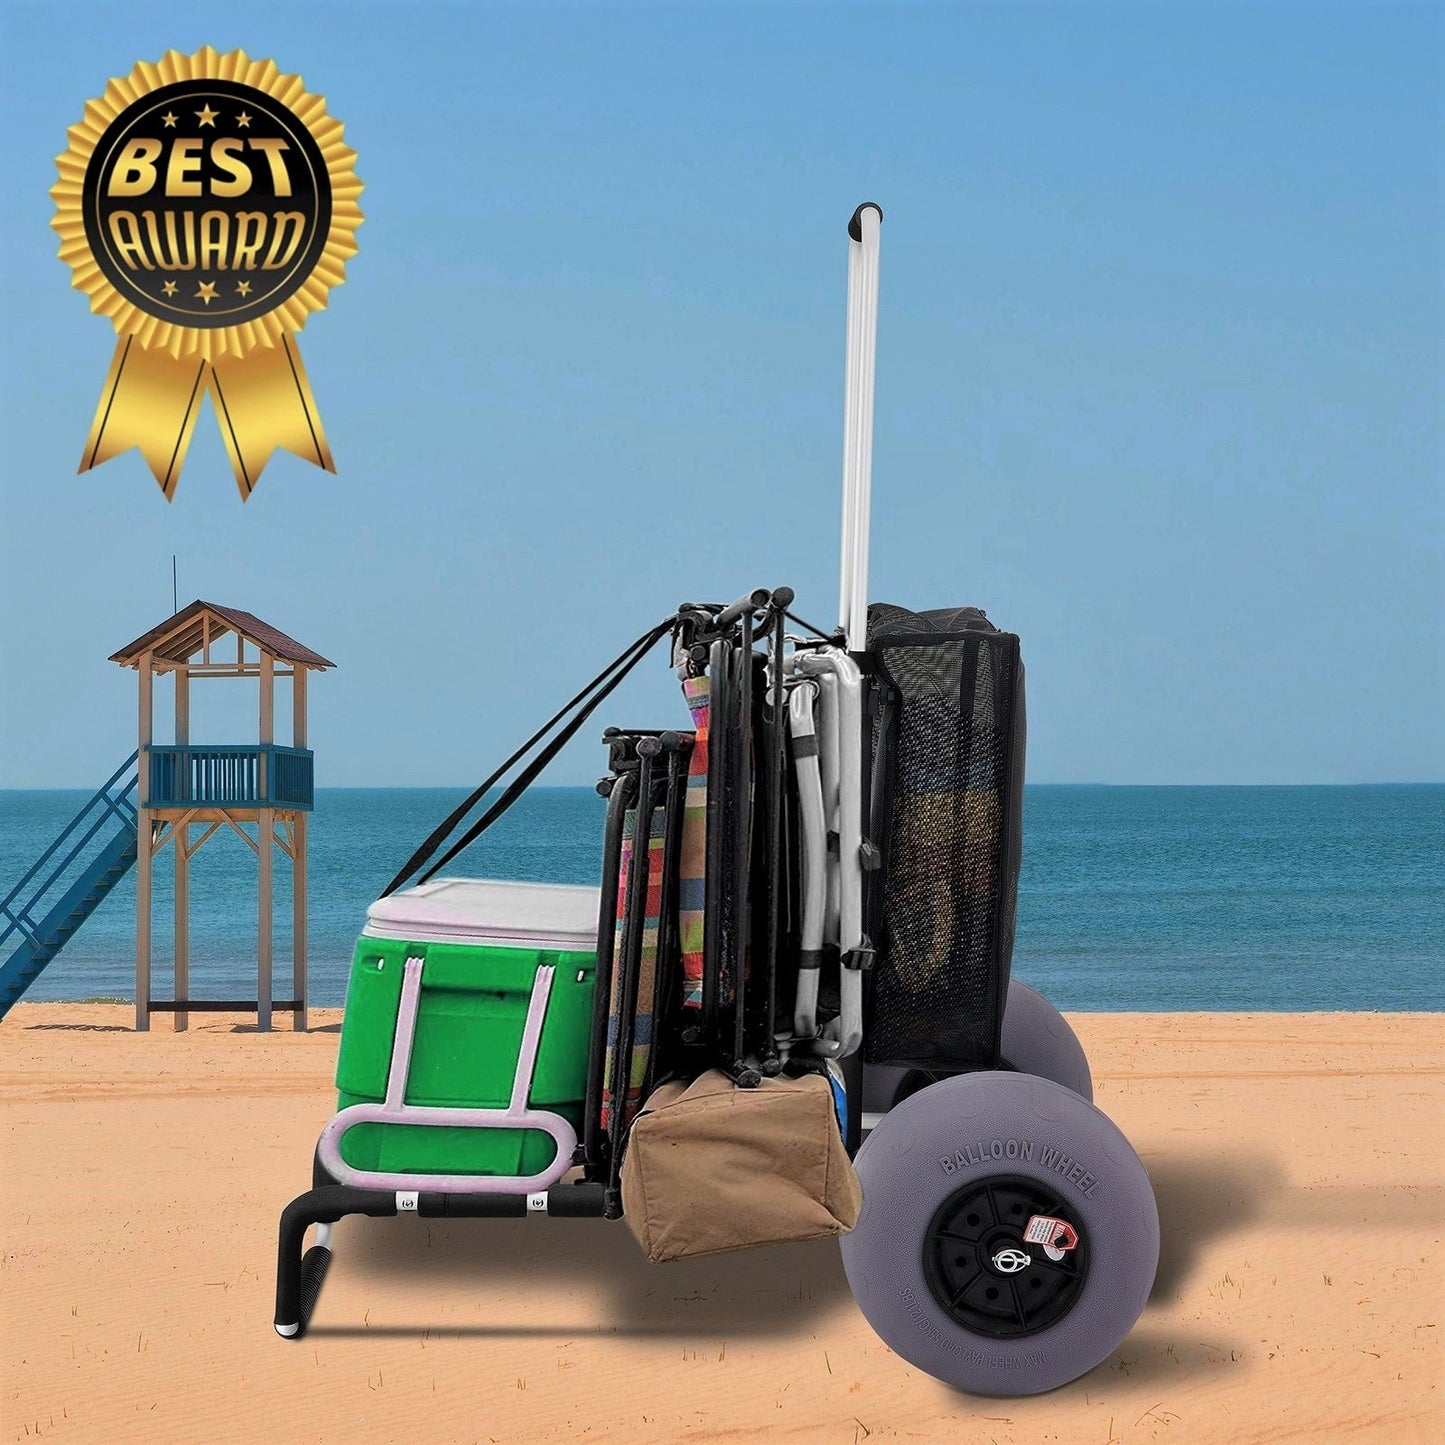 Best 165LBS Folding Beach Cargo Deck Cart W/ All-Terrain Balloon Tires